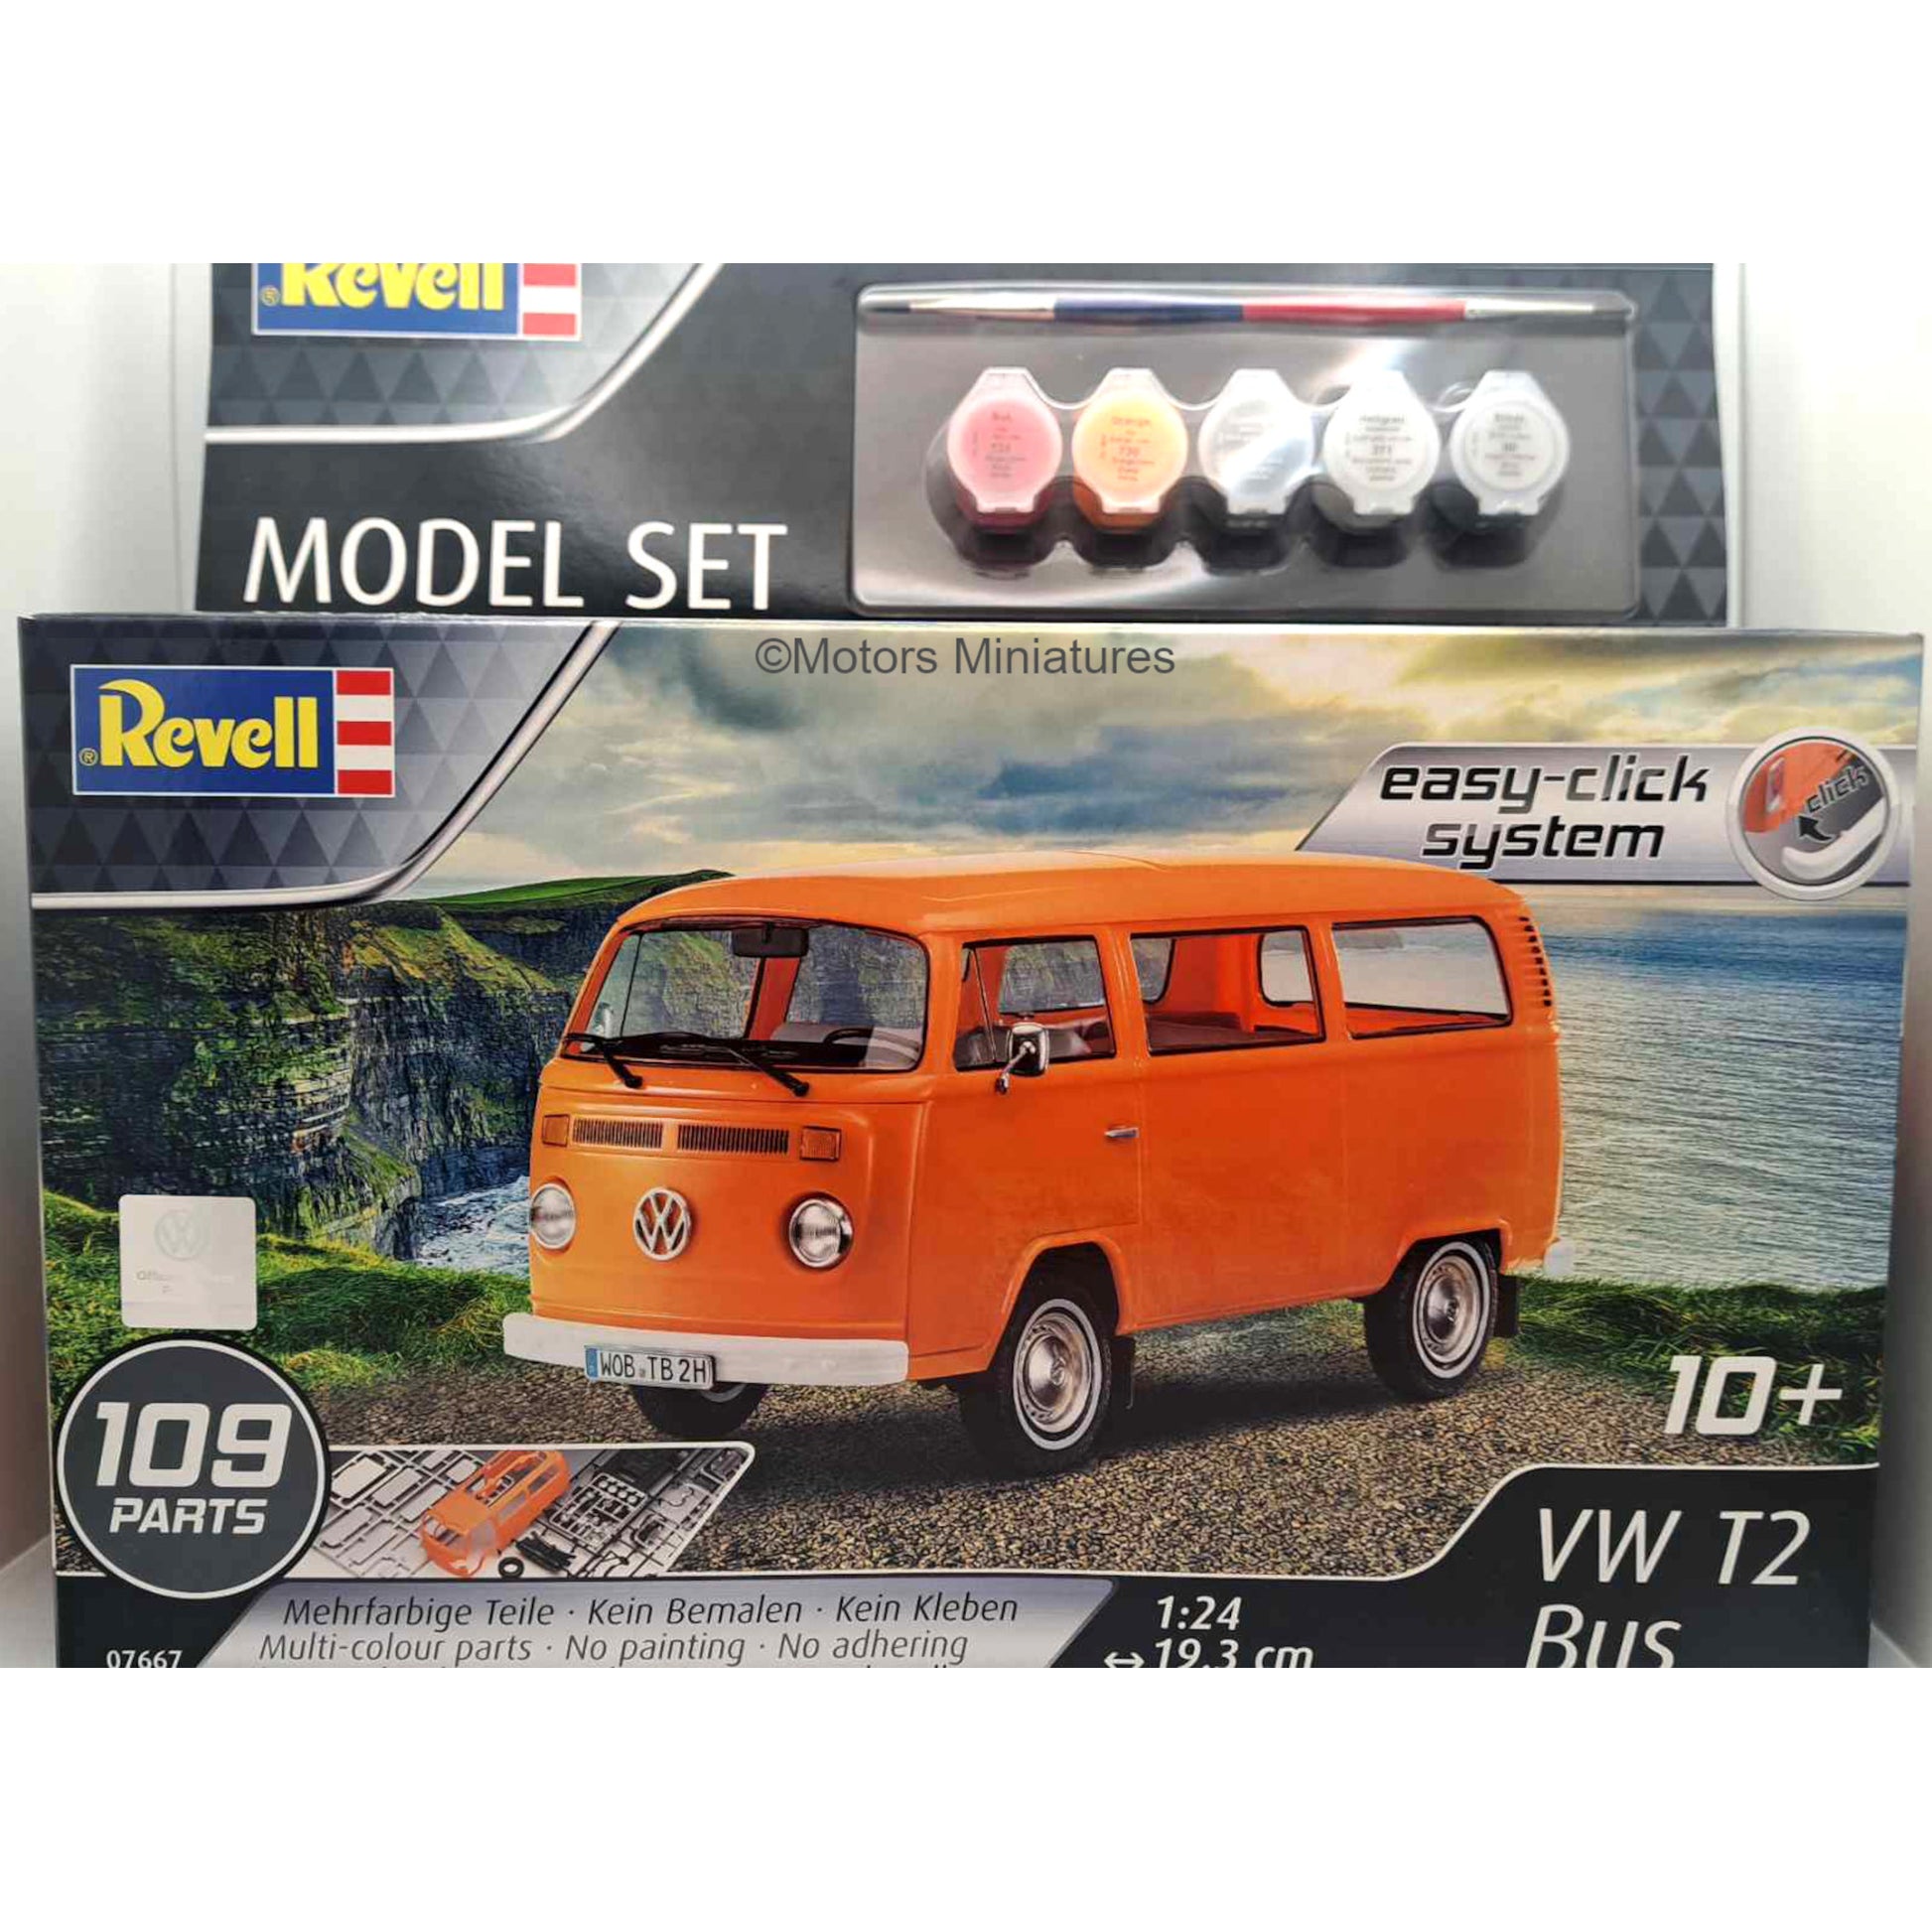 Volkswagen T2 BUS Modelkit Easy Click Revell 1/24 | Motors Miniatures